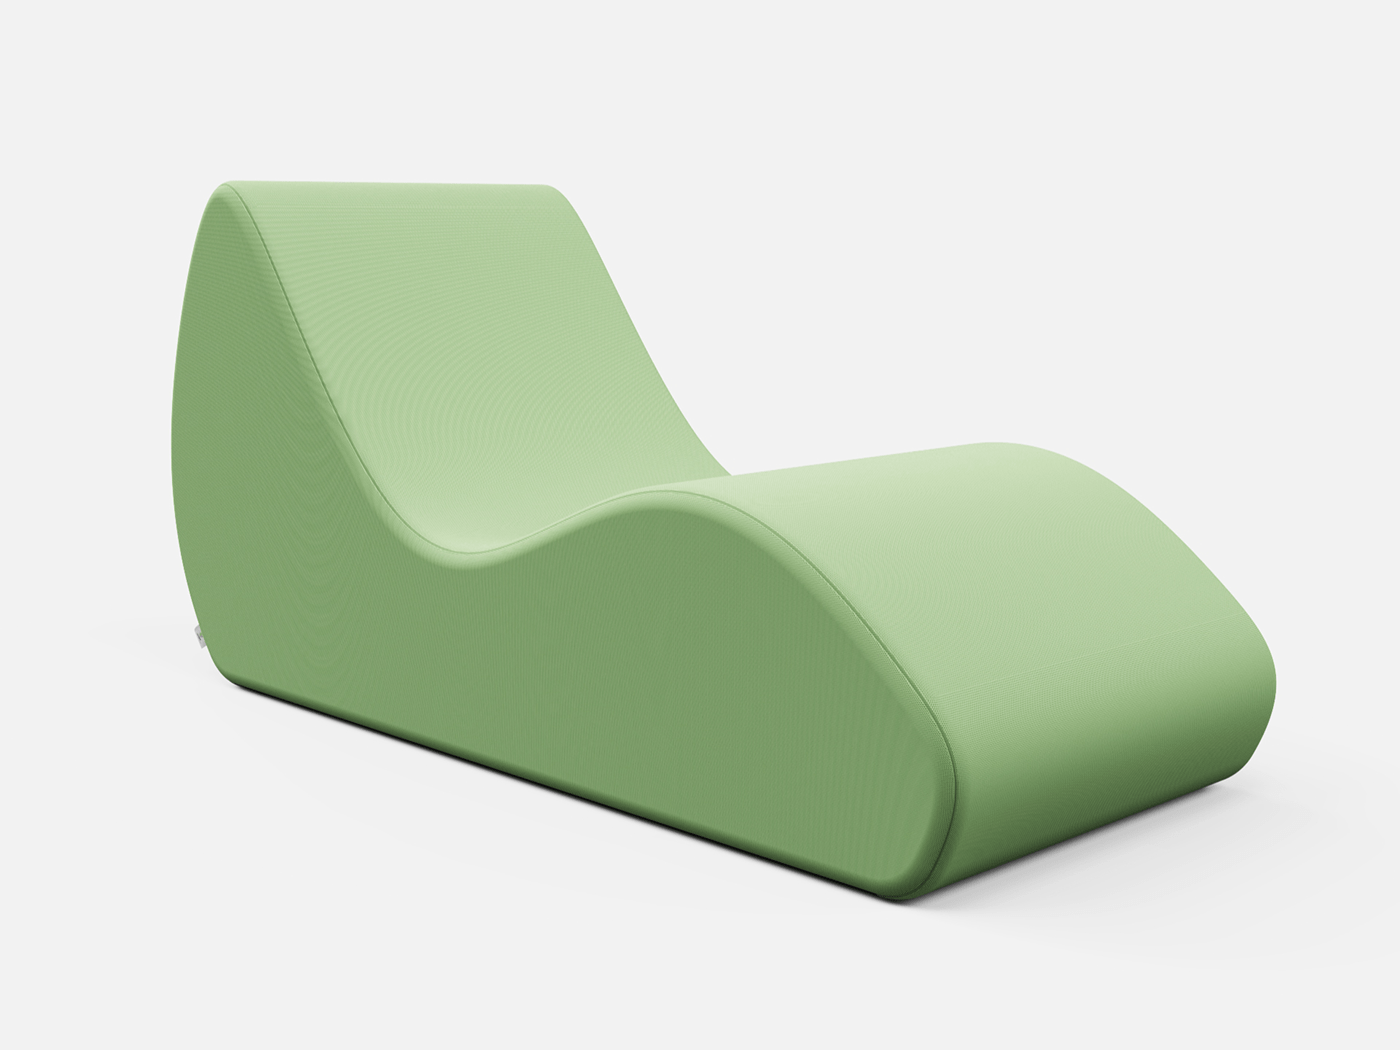 puff design product design  exteriordesign furniture industrial design  product Render